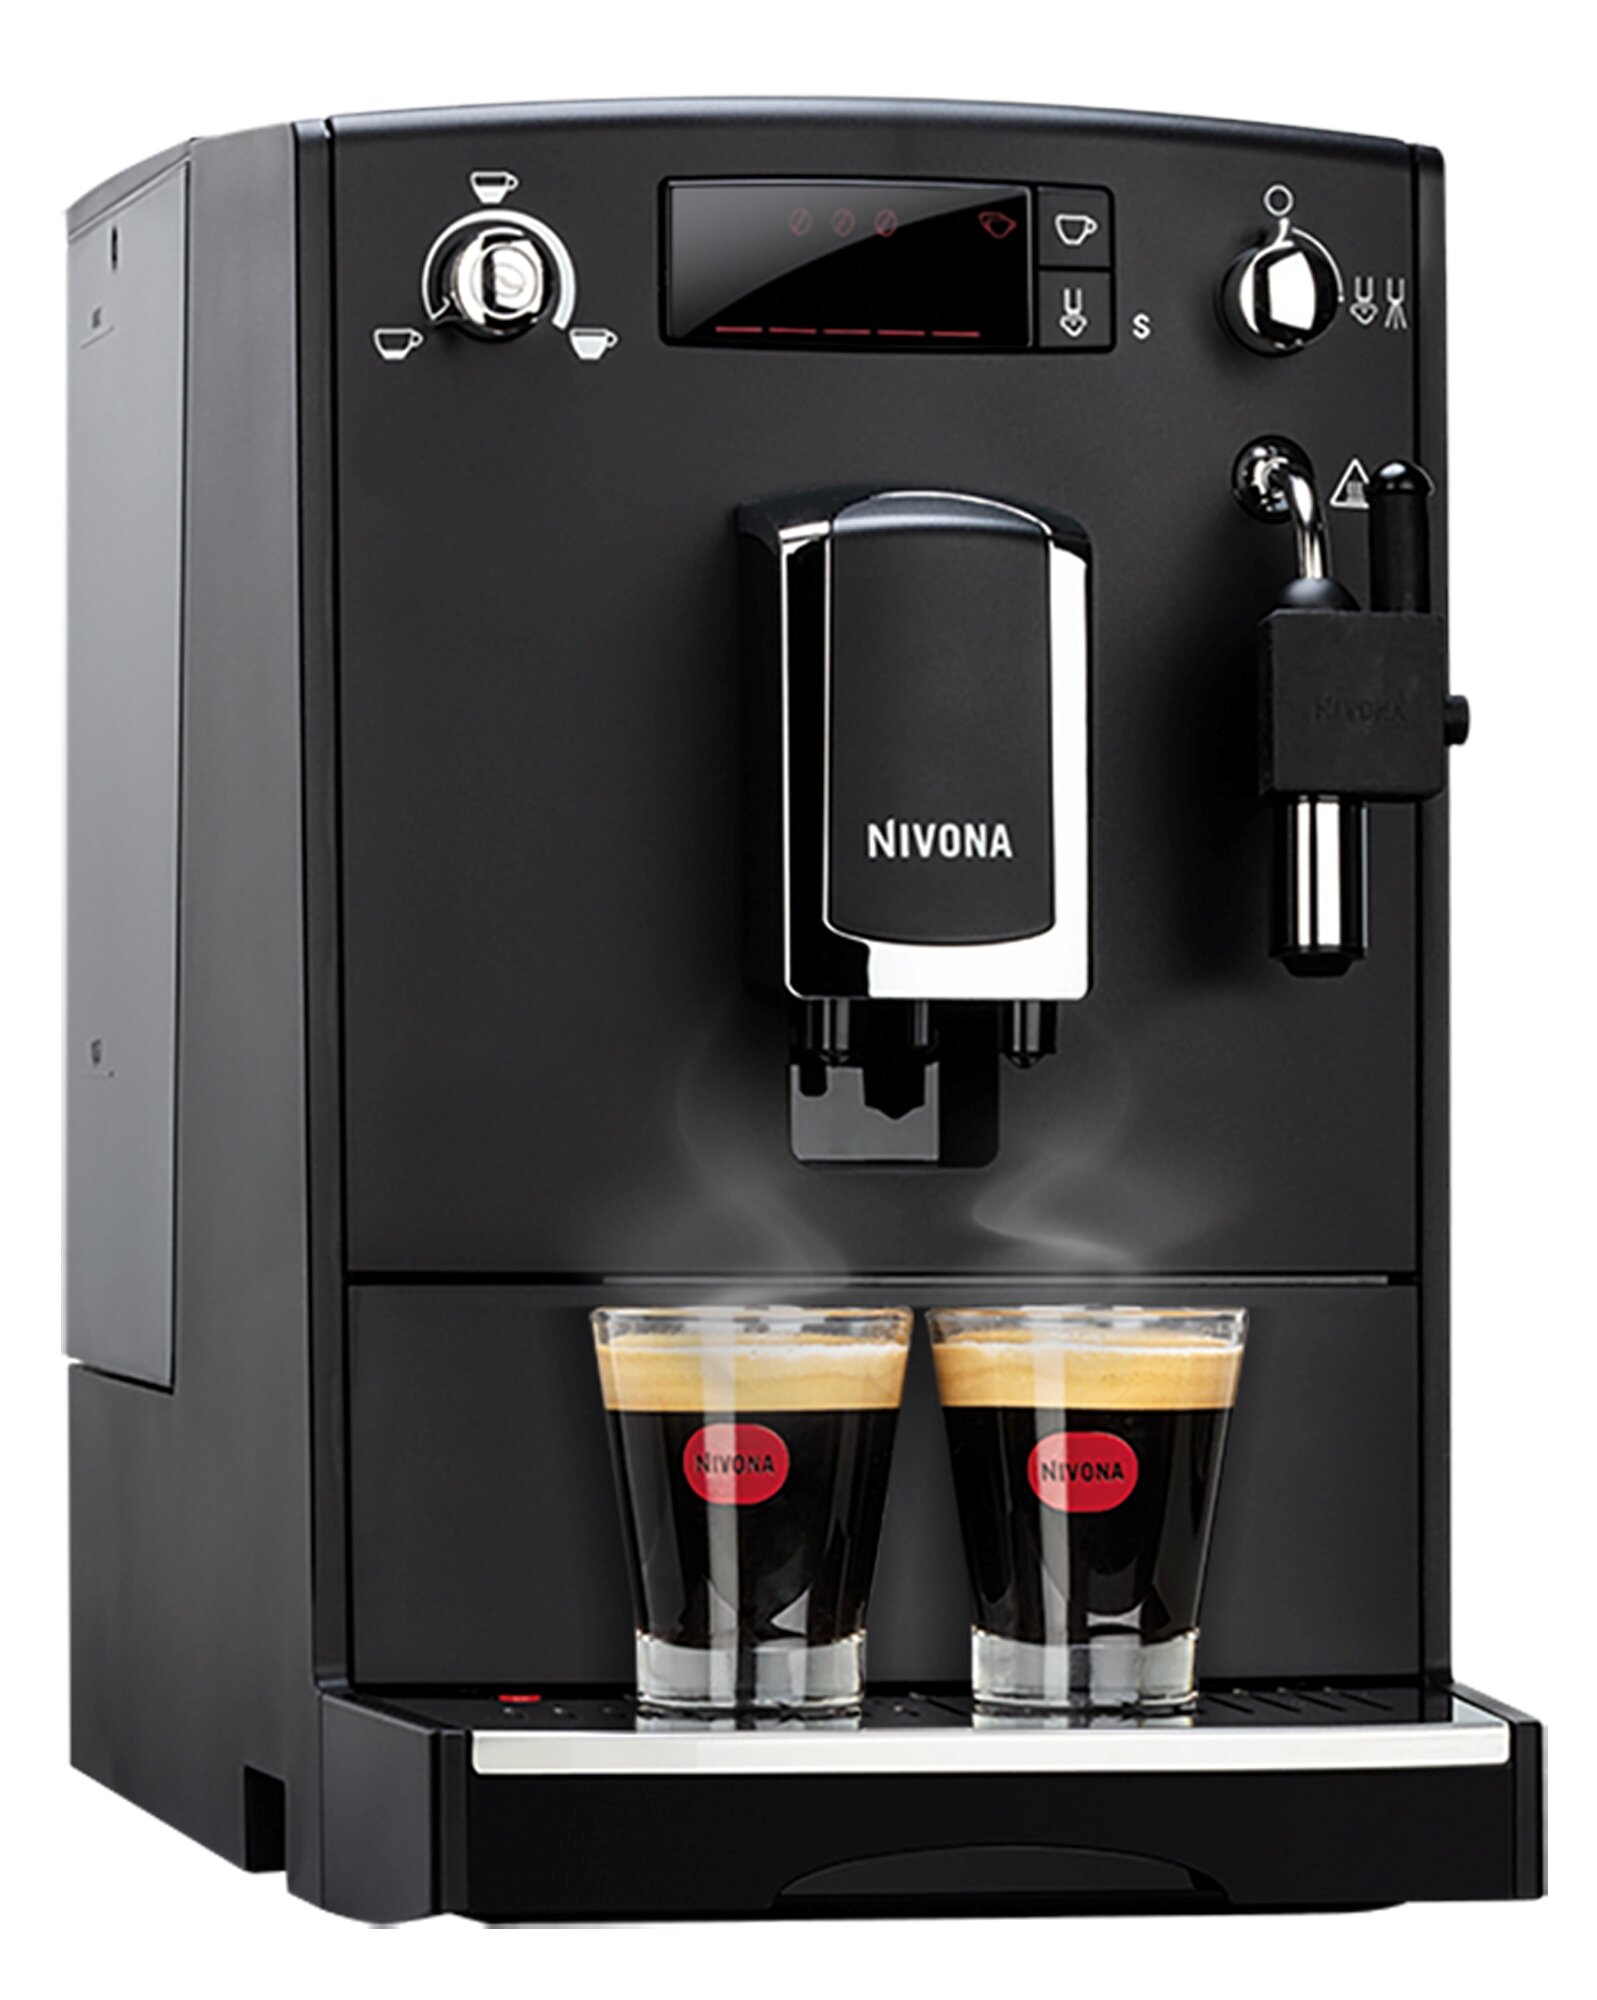 NIVONA CafeRomatica 520 Ekspres - niskie ceny i opinie w Media Expert